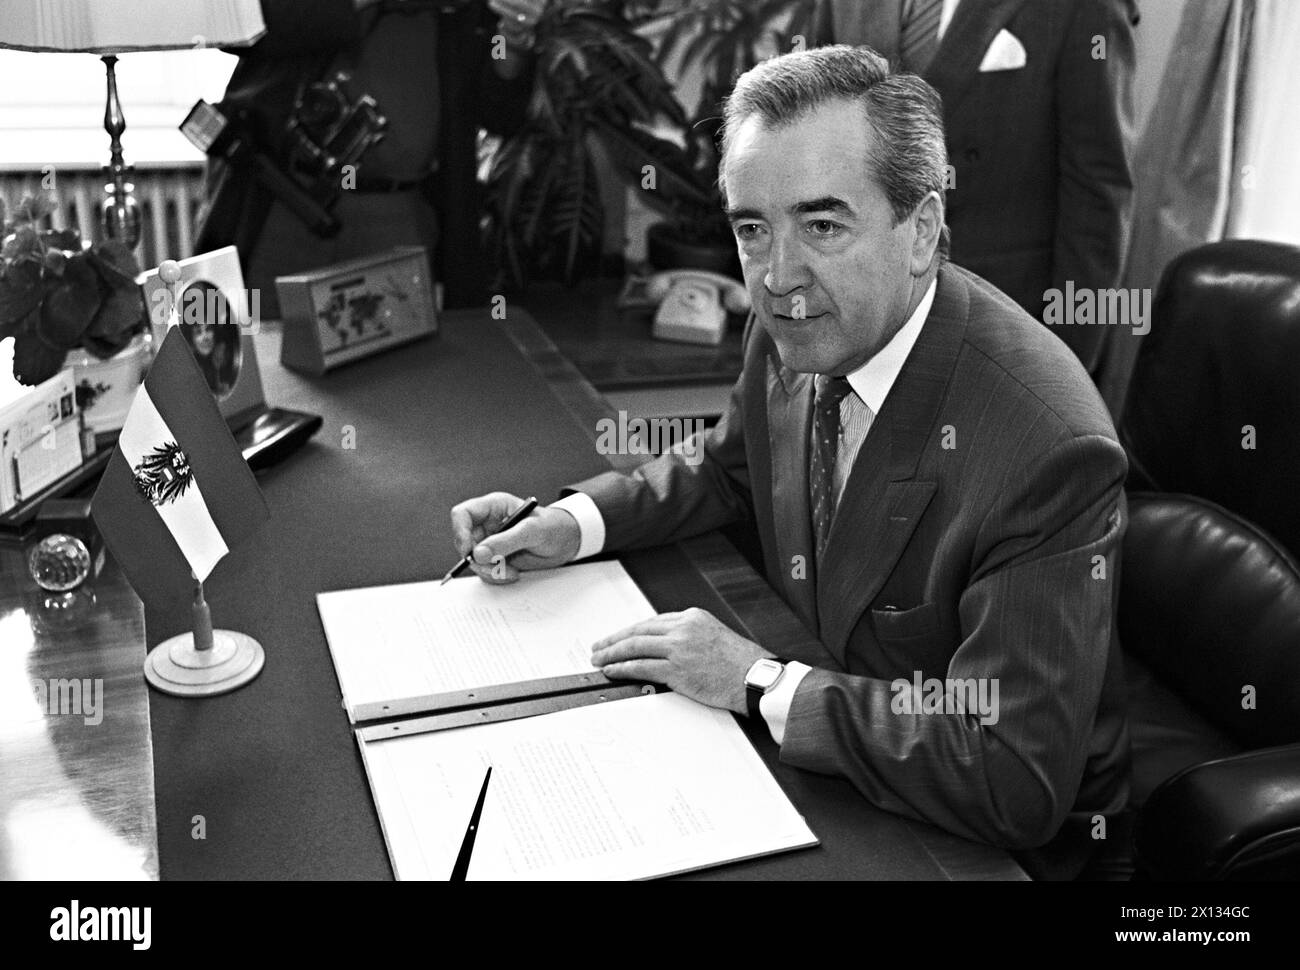 Wien am 13. Juli 1989: Österreichs Außenminister Alois Mock unterzeichnet den Antrag auf Beitritt Österreichs zur Europäischen Gemeinschaft. - 19890713 PD0013 - Rechteinfo: Rechte verwaltet (RM) Stockfoto